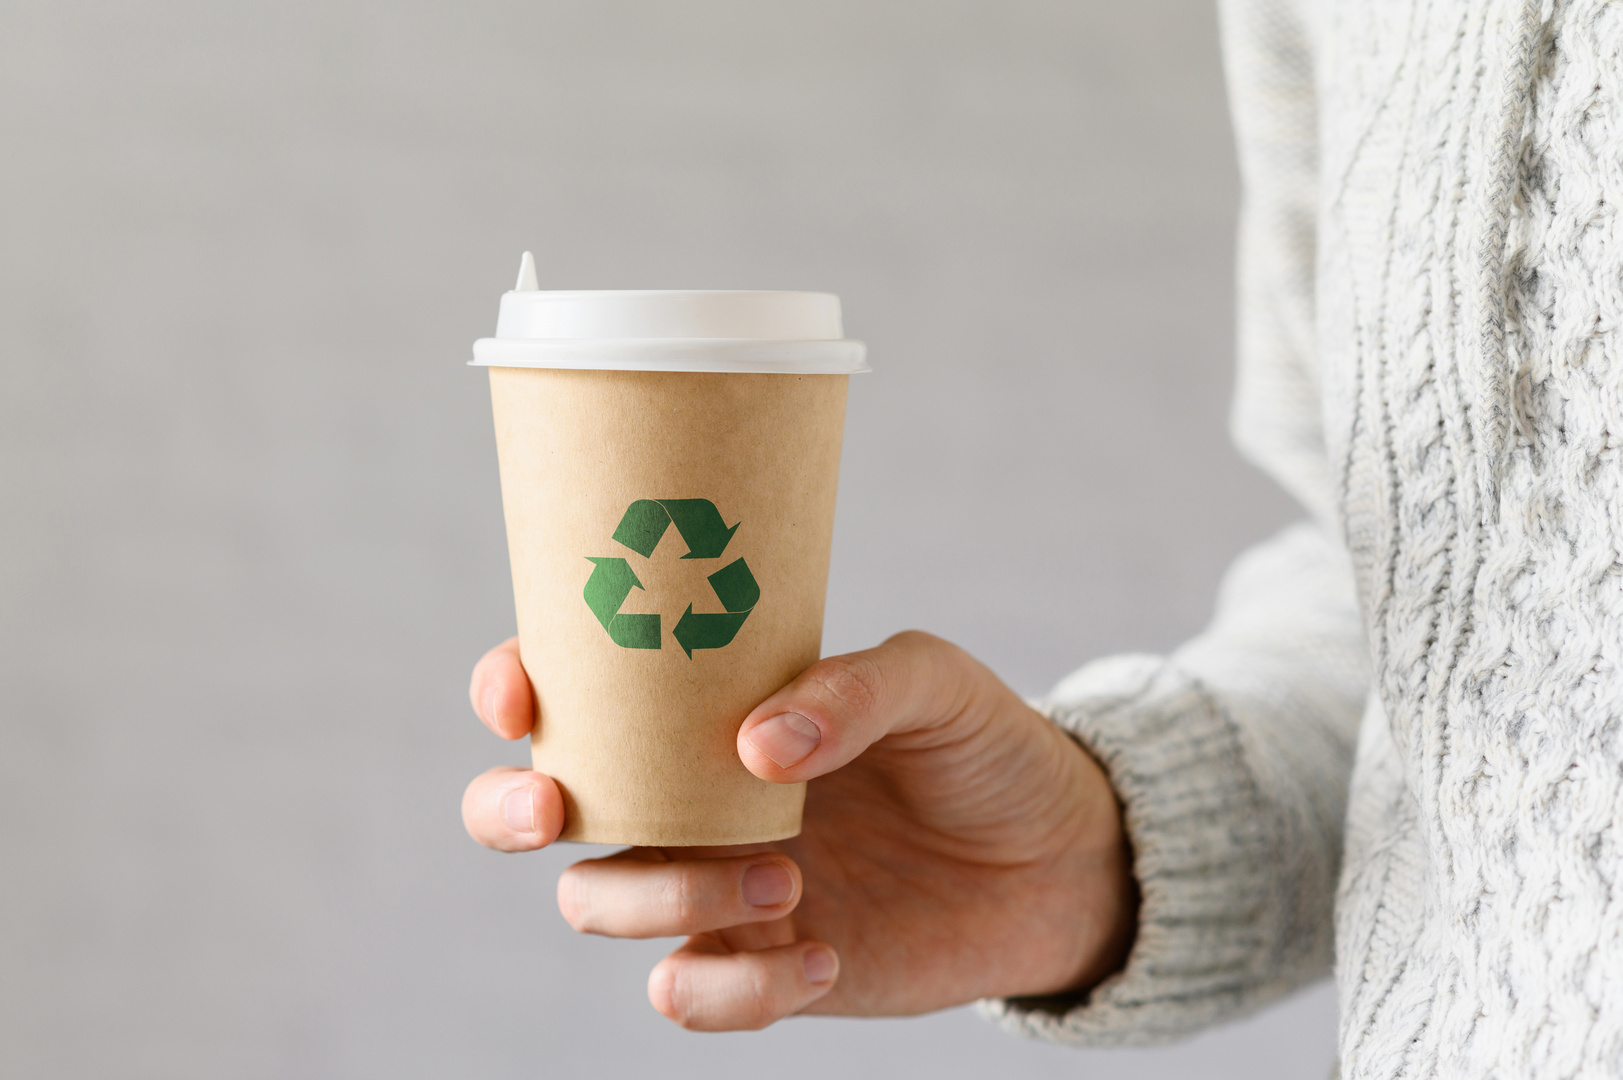 Ein recyclebarer Pappbecher, der mit einem eindeutigen grünen Recycling-Symbol versehen ist.